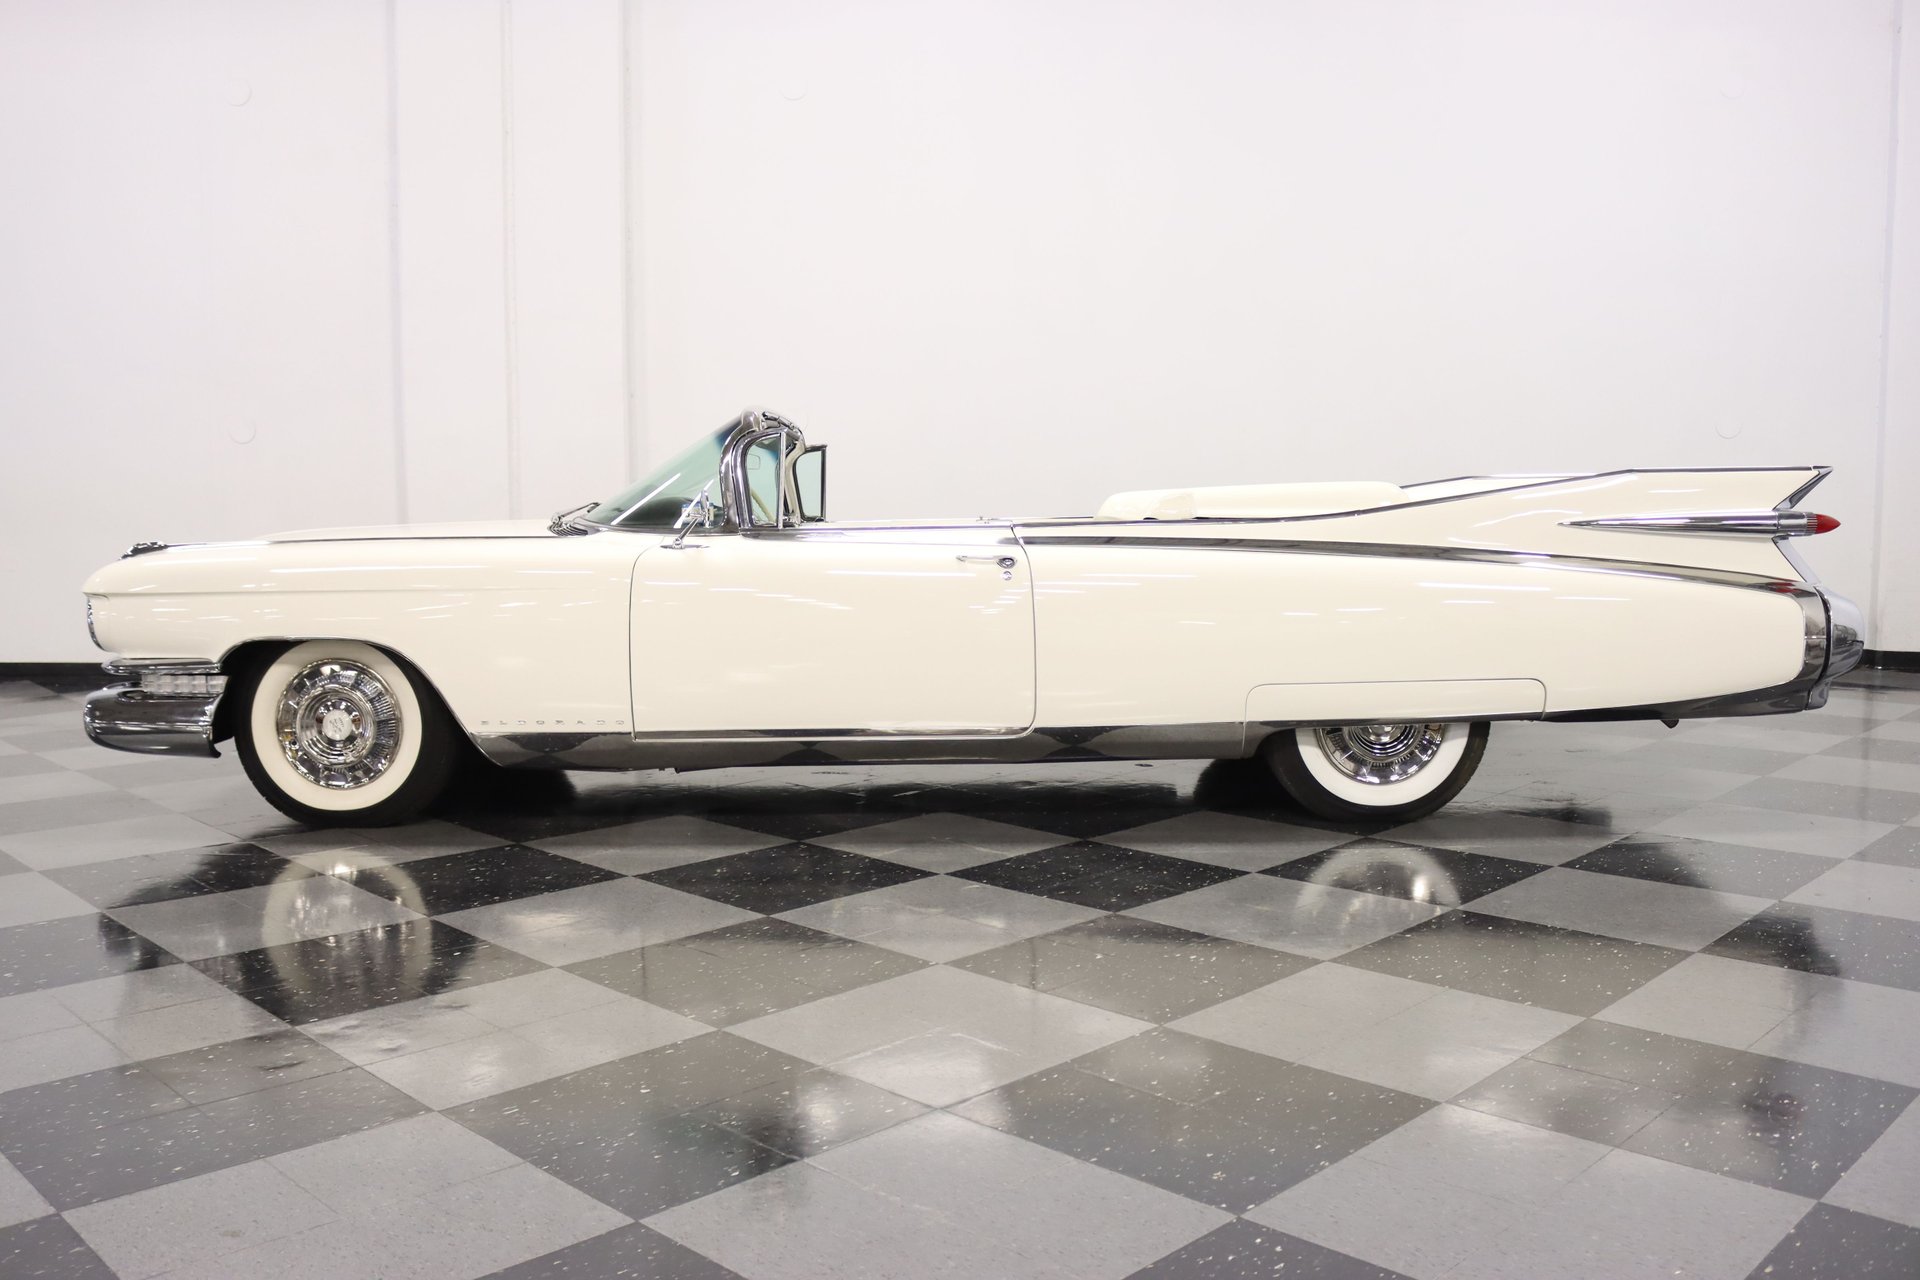 Used 1959 Cadillac Eldorado Convertible For Sale (Sold)